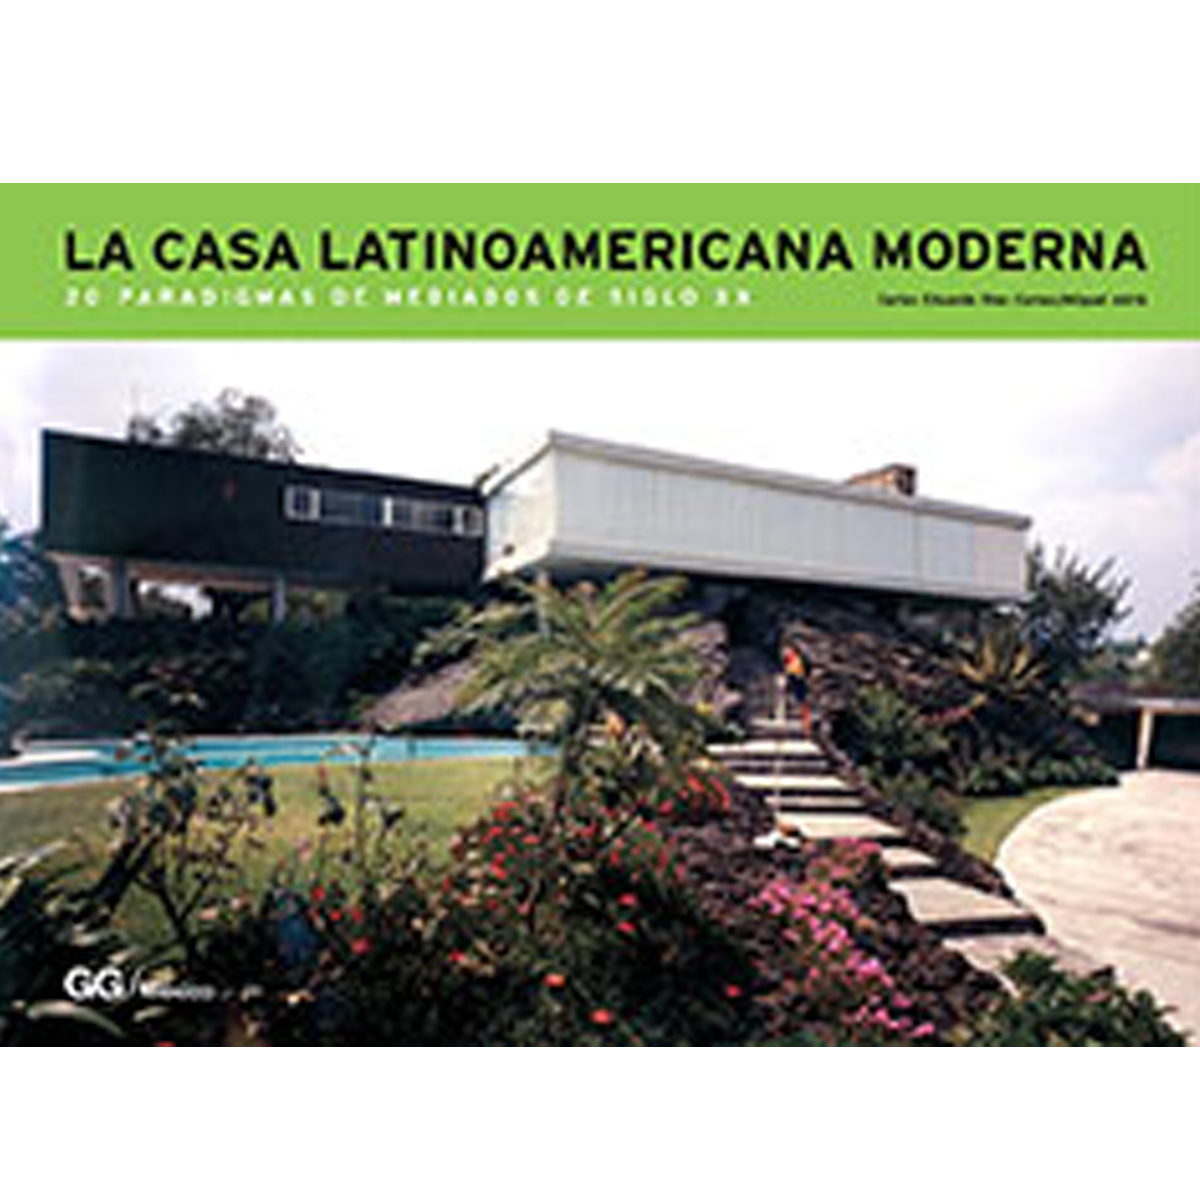 La casa latinoamericana moderna